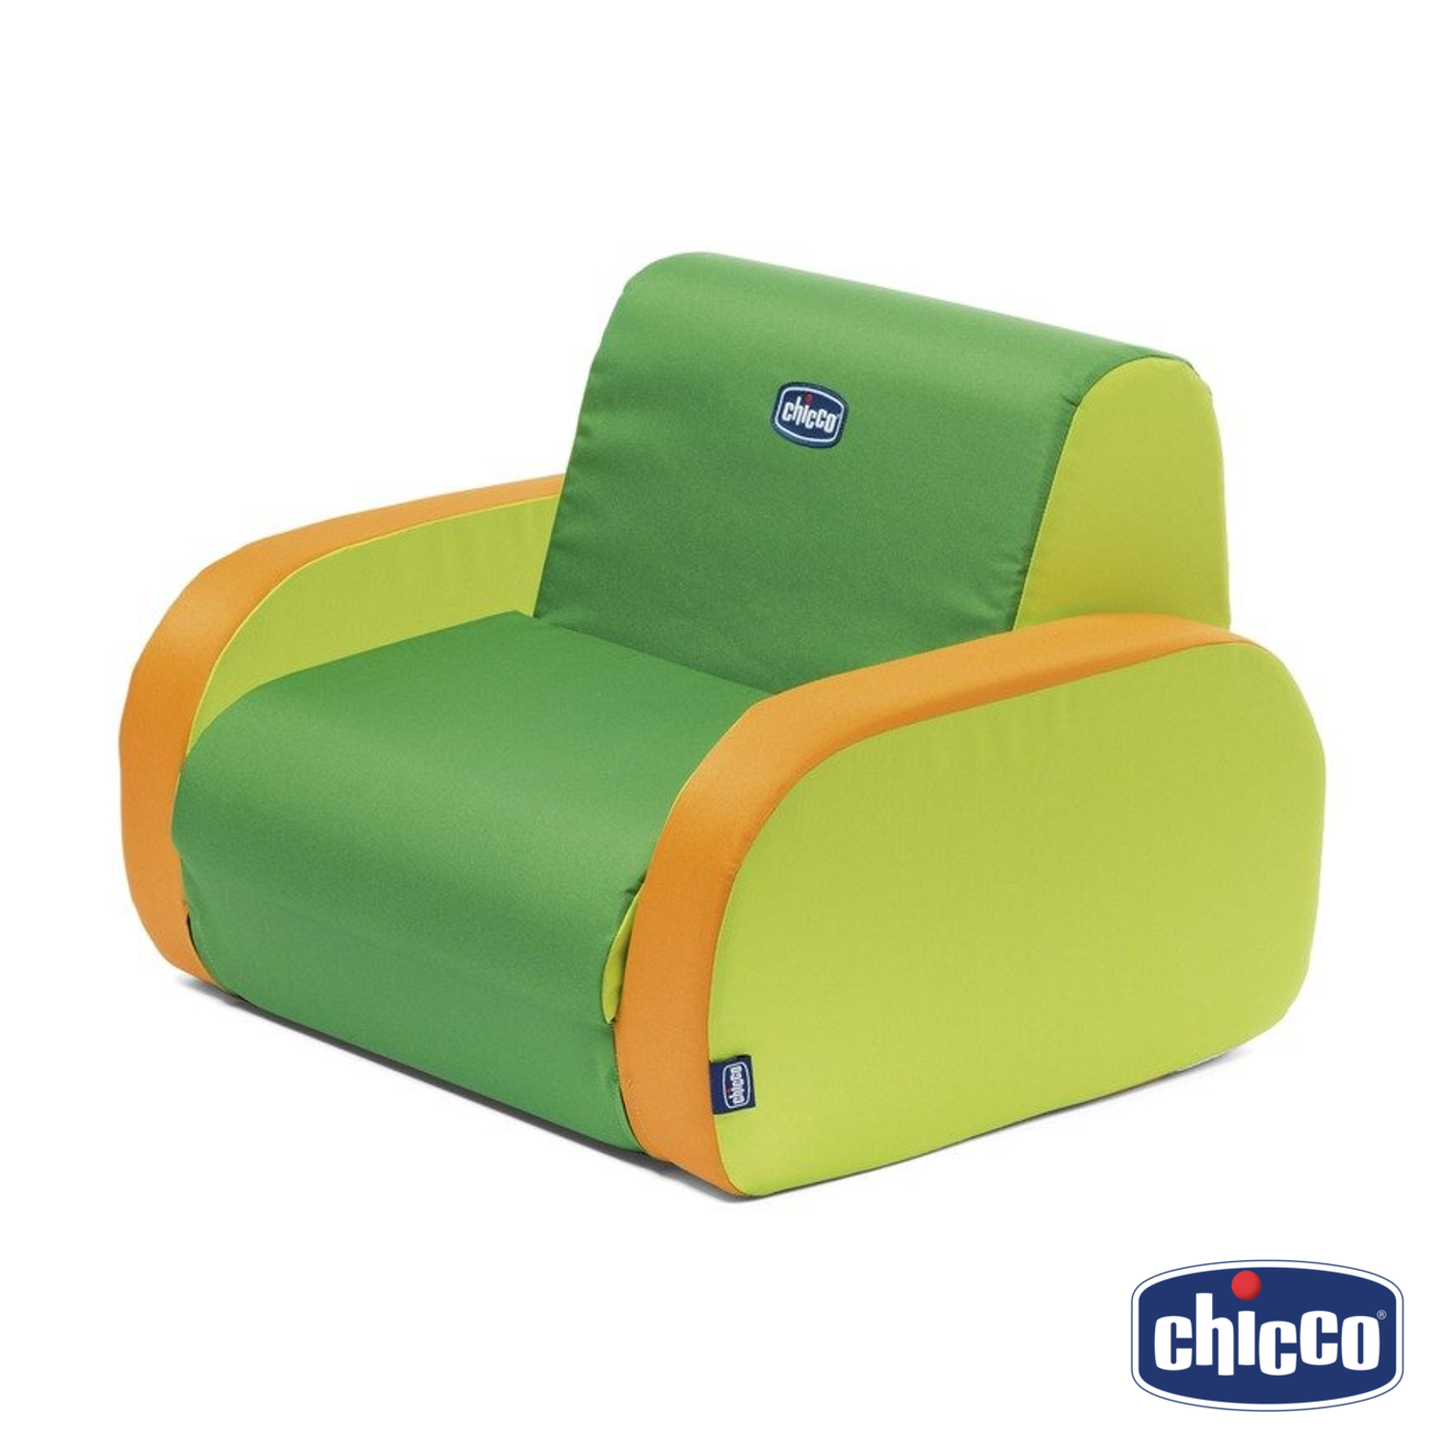 CHICCO Dino Trottolino Trottola con Sfere Colorate Prime Attività per  Bambini da 6+ Mesi colore Verde - 9711